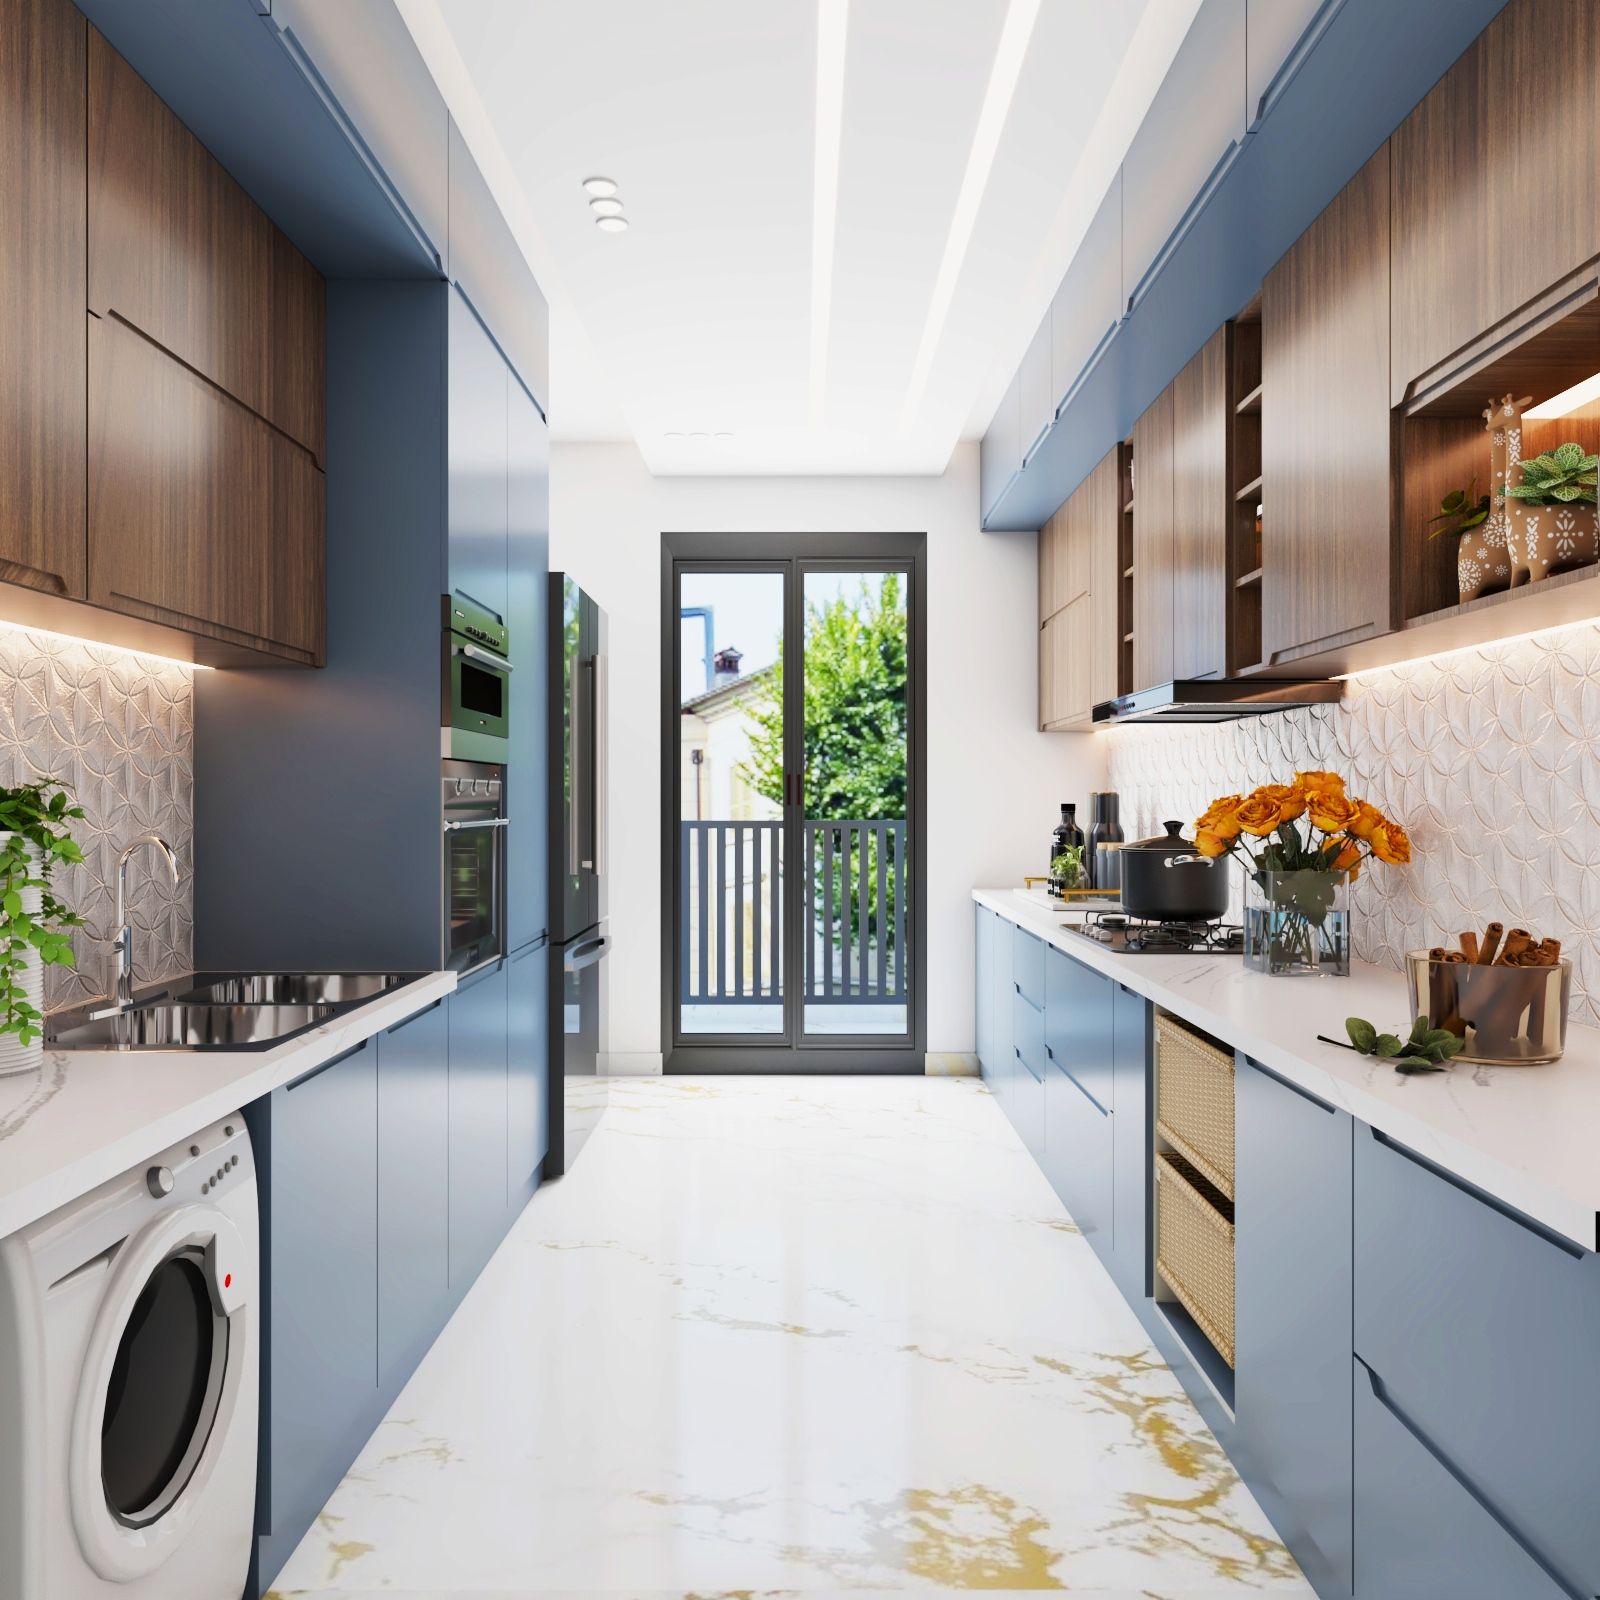 Modern Light Blue And Wooden Parallel Modular Kitchen Design With Floral Backsplash